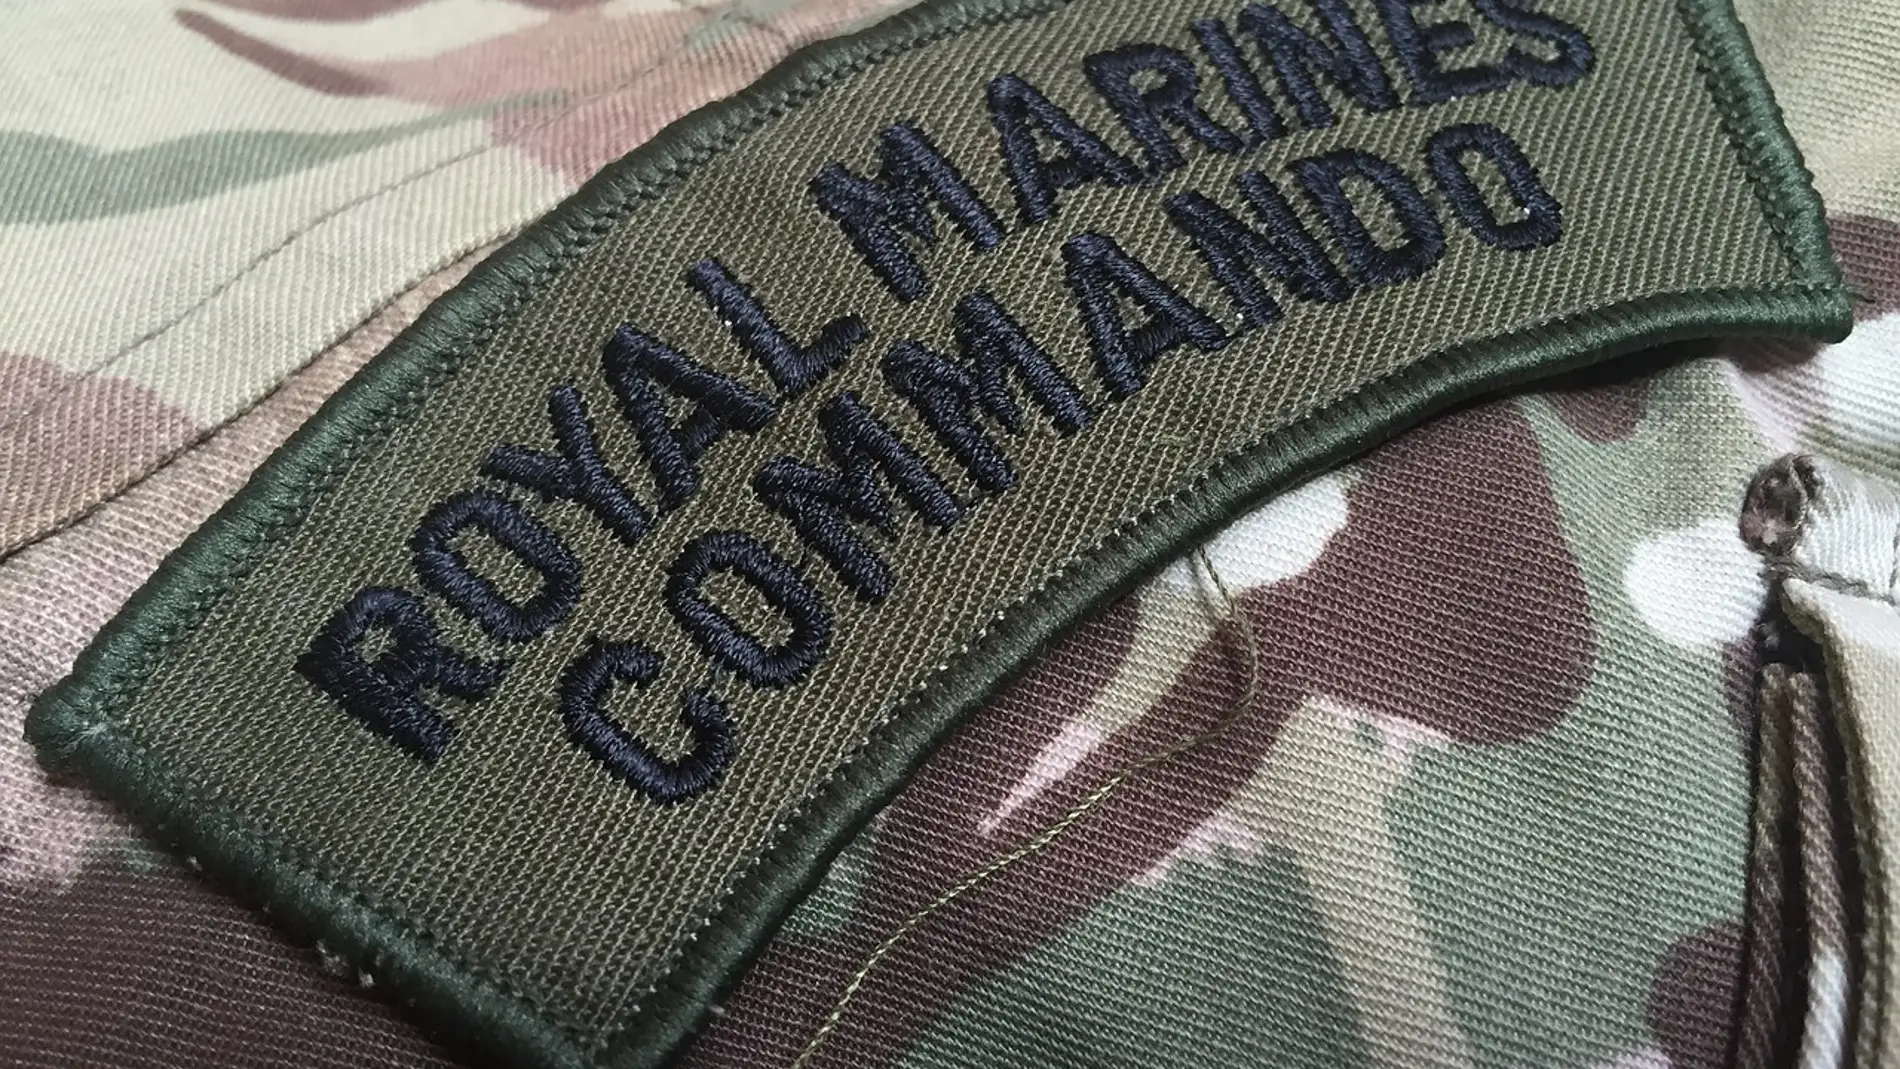 Royal Marine